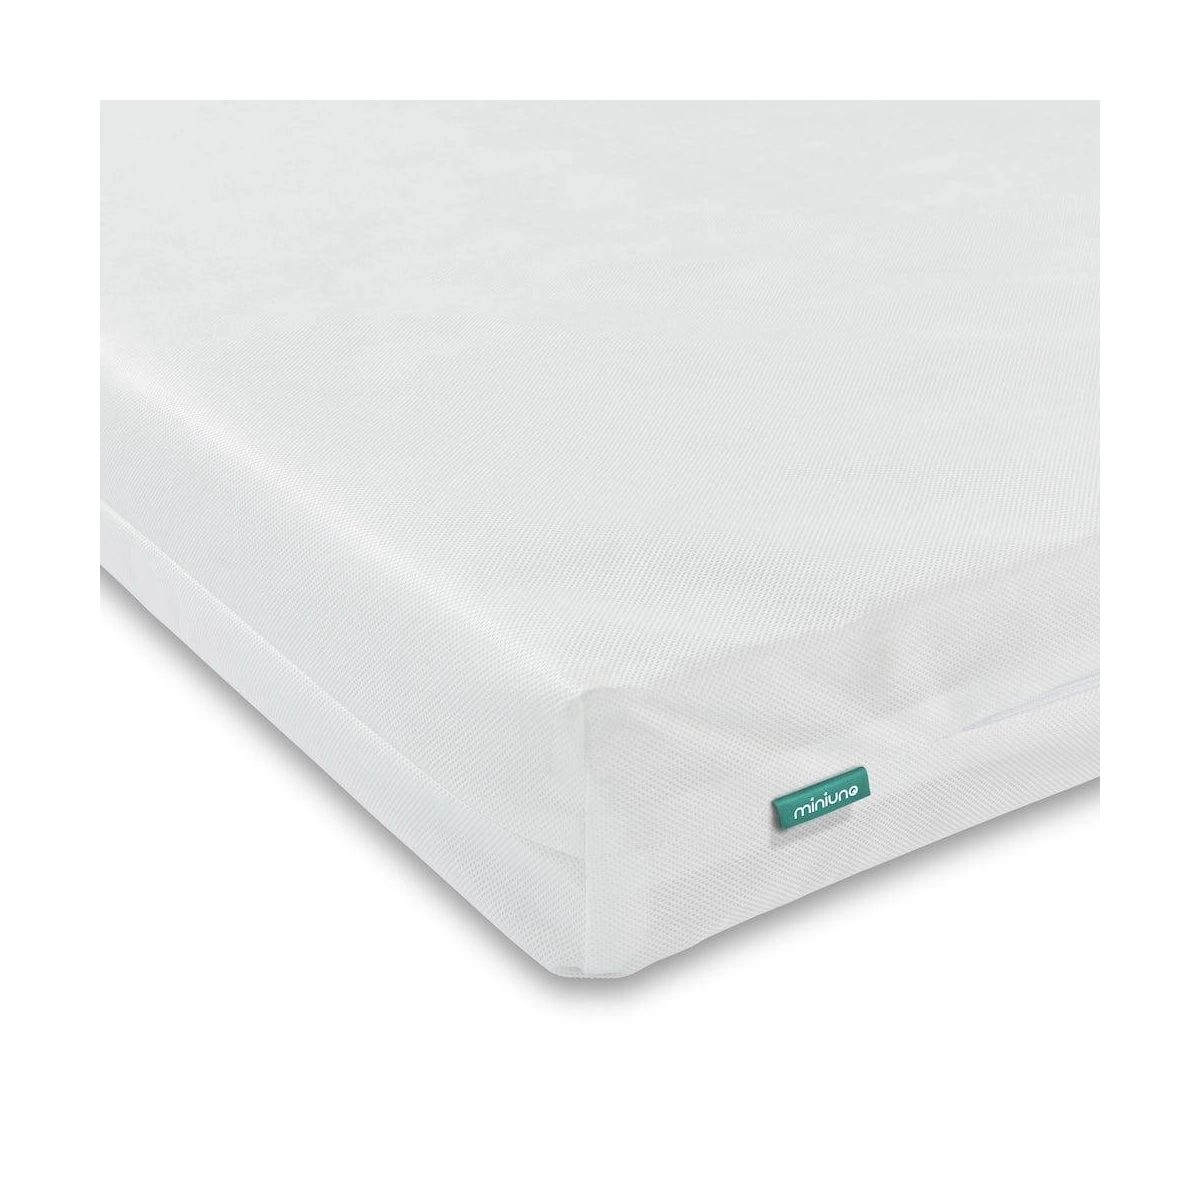 miniuno Fibre Cot Bed Mattress (140 x 70 cm)